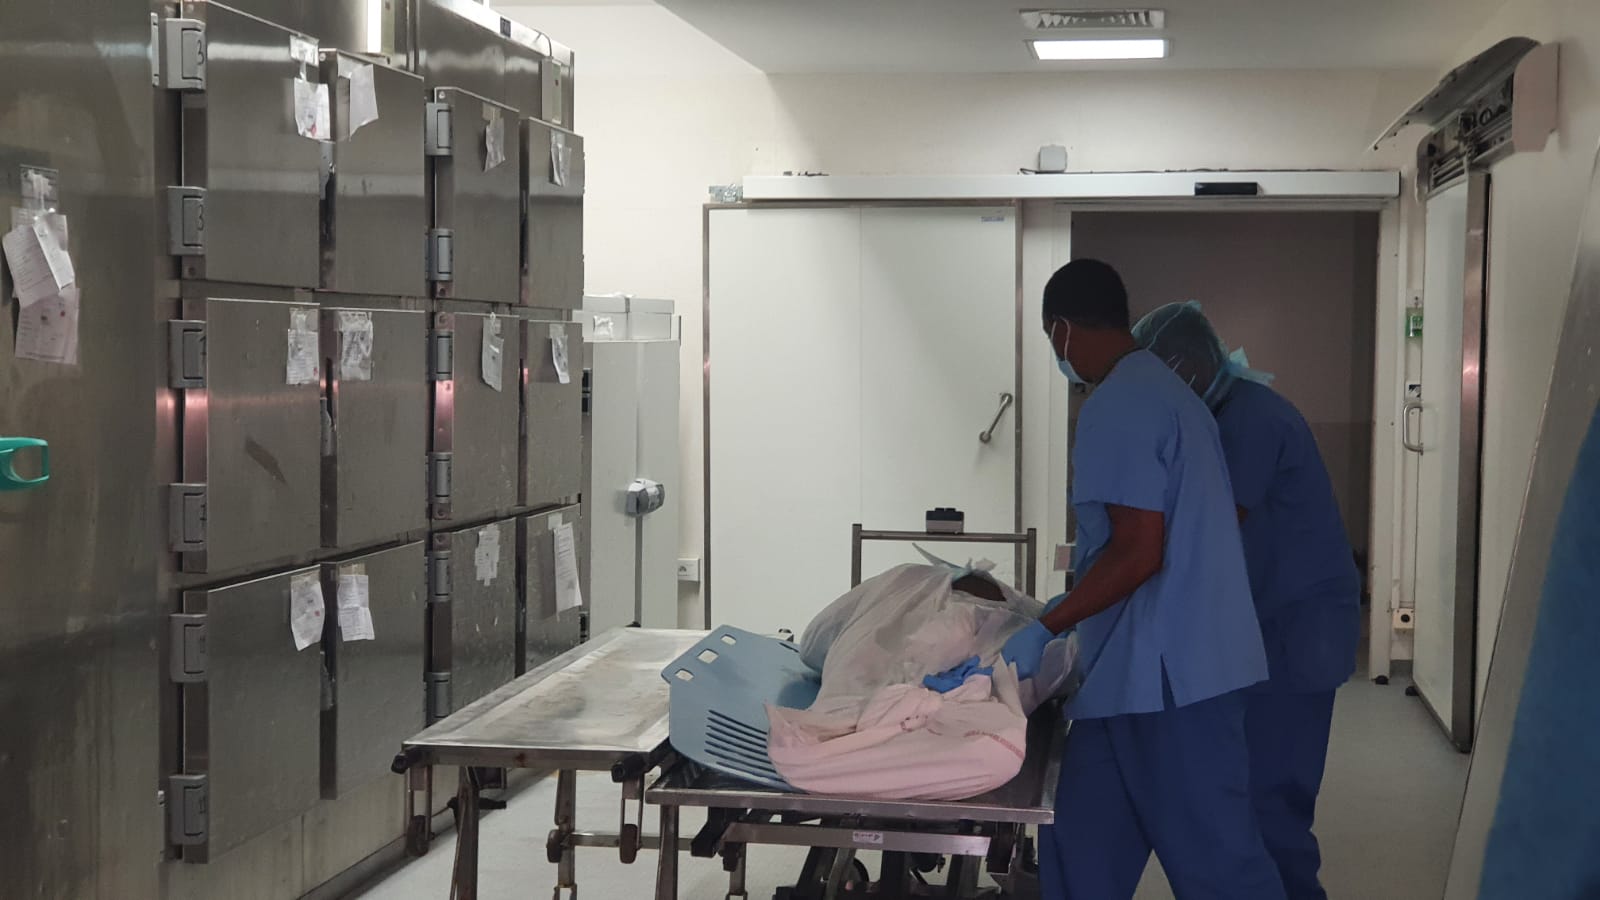     Saturation de la morgue : les pompes funèbres en renfort

